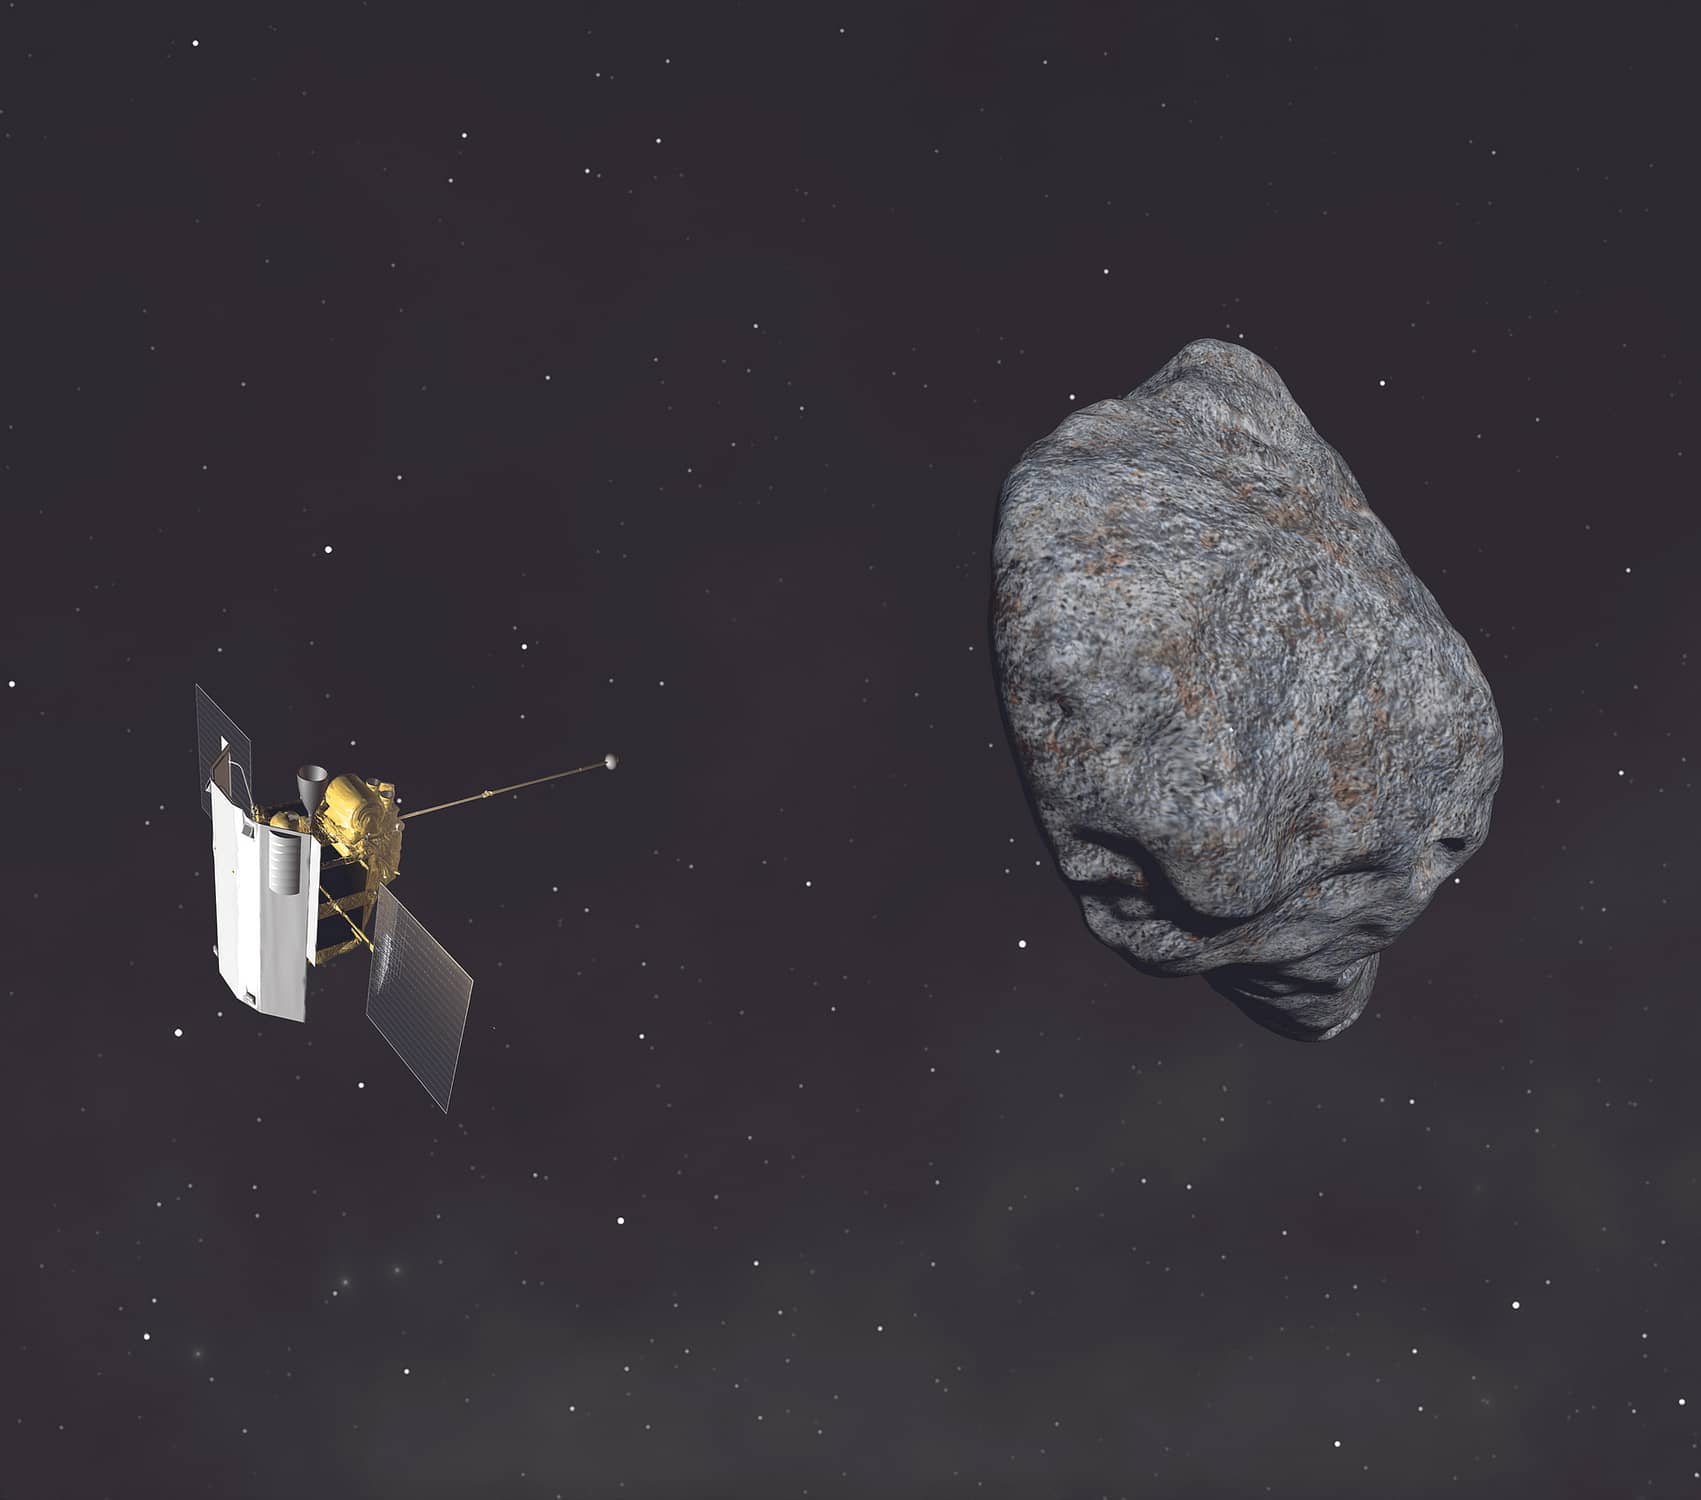 Bolygós rövidhírek: decemberben érkezik az aszteroidakőzet